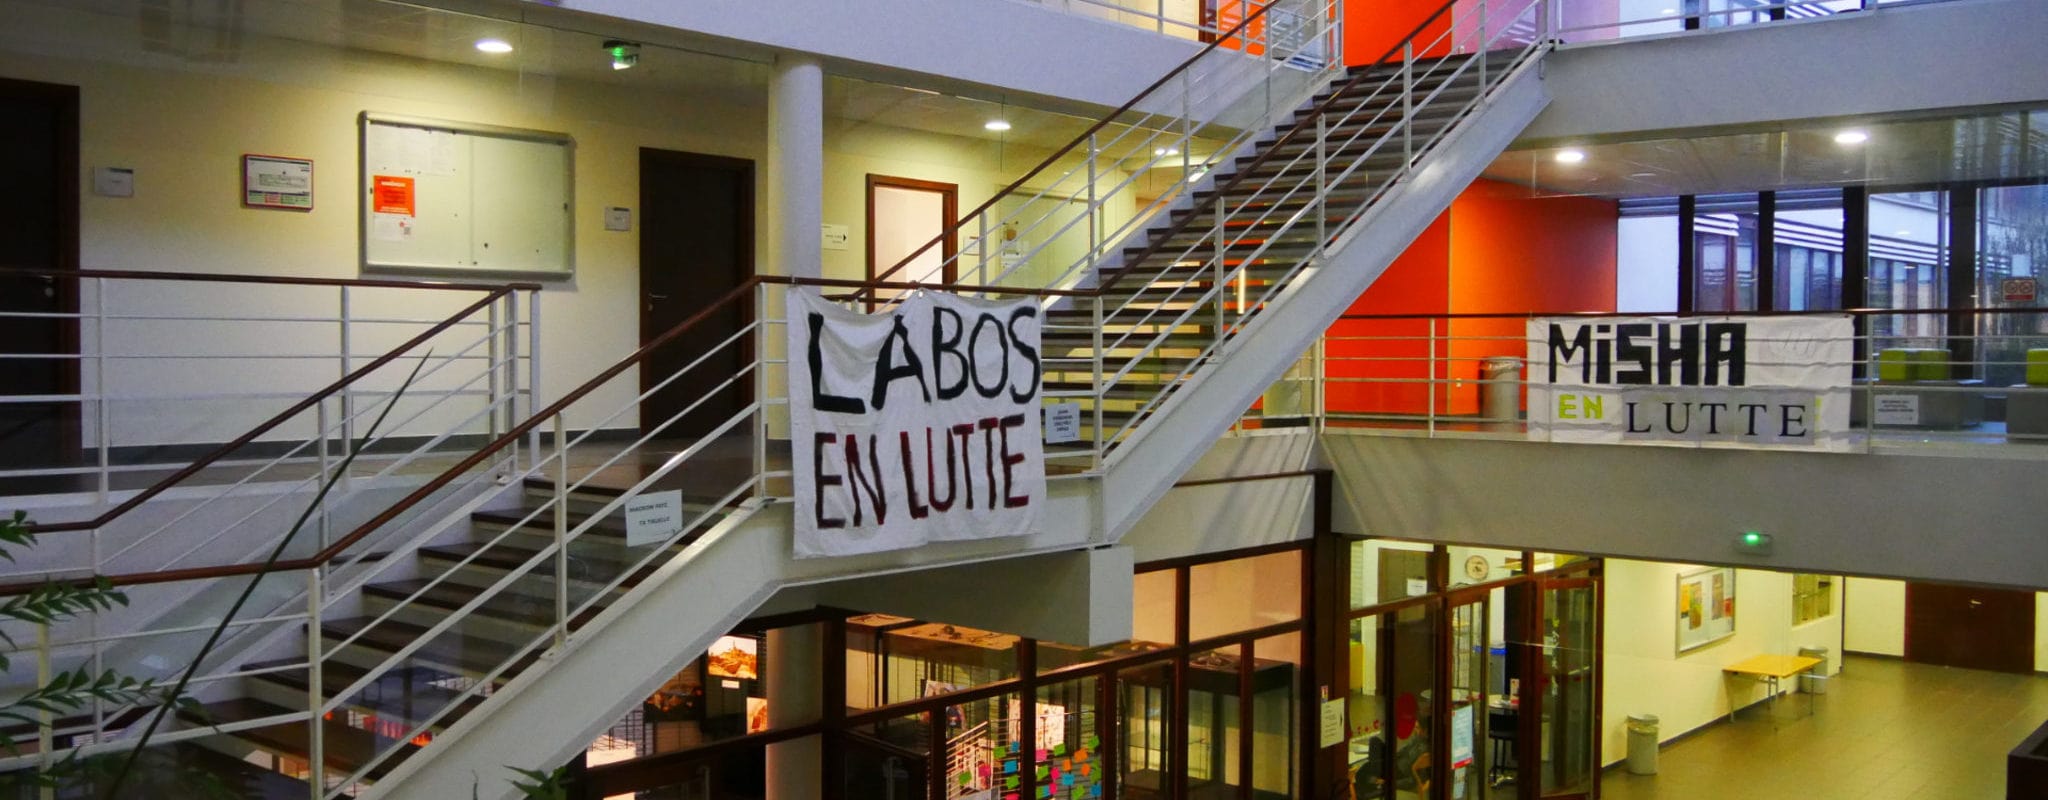 Chercheurs et enseignants se mobilisent contre une future « précarité institutionnalisée » à l’Université